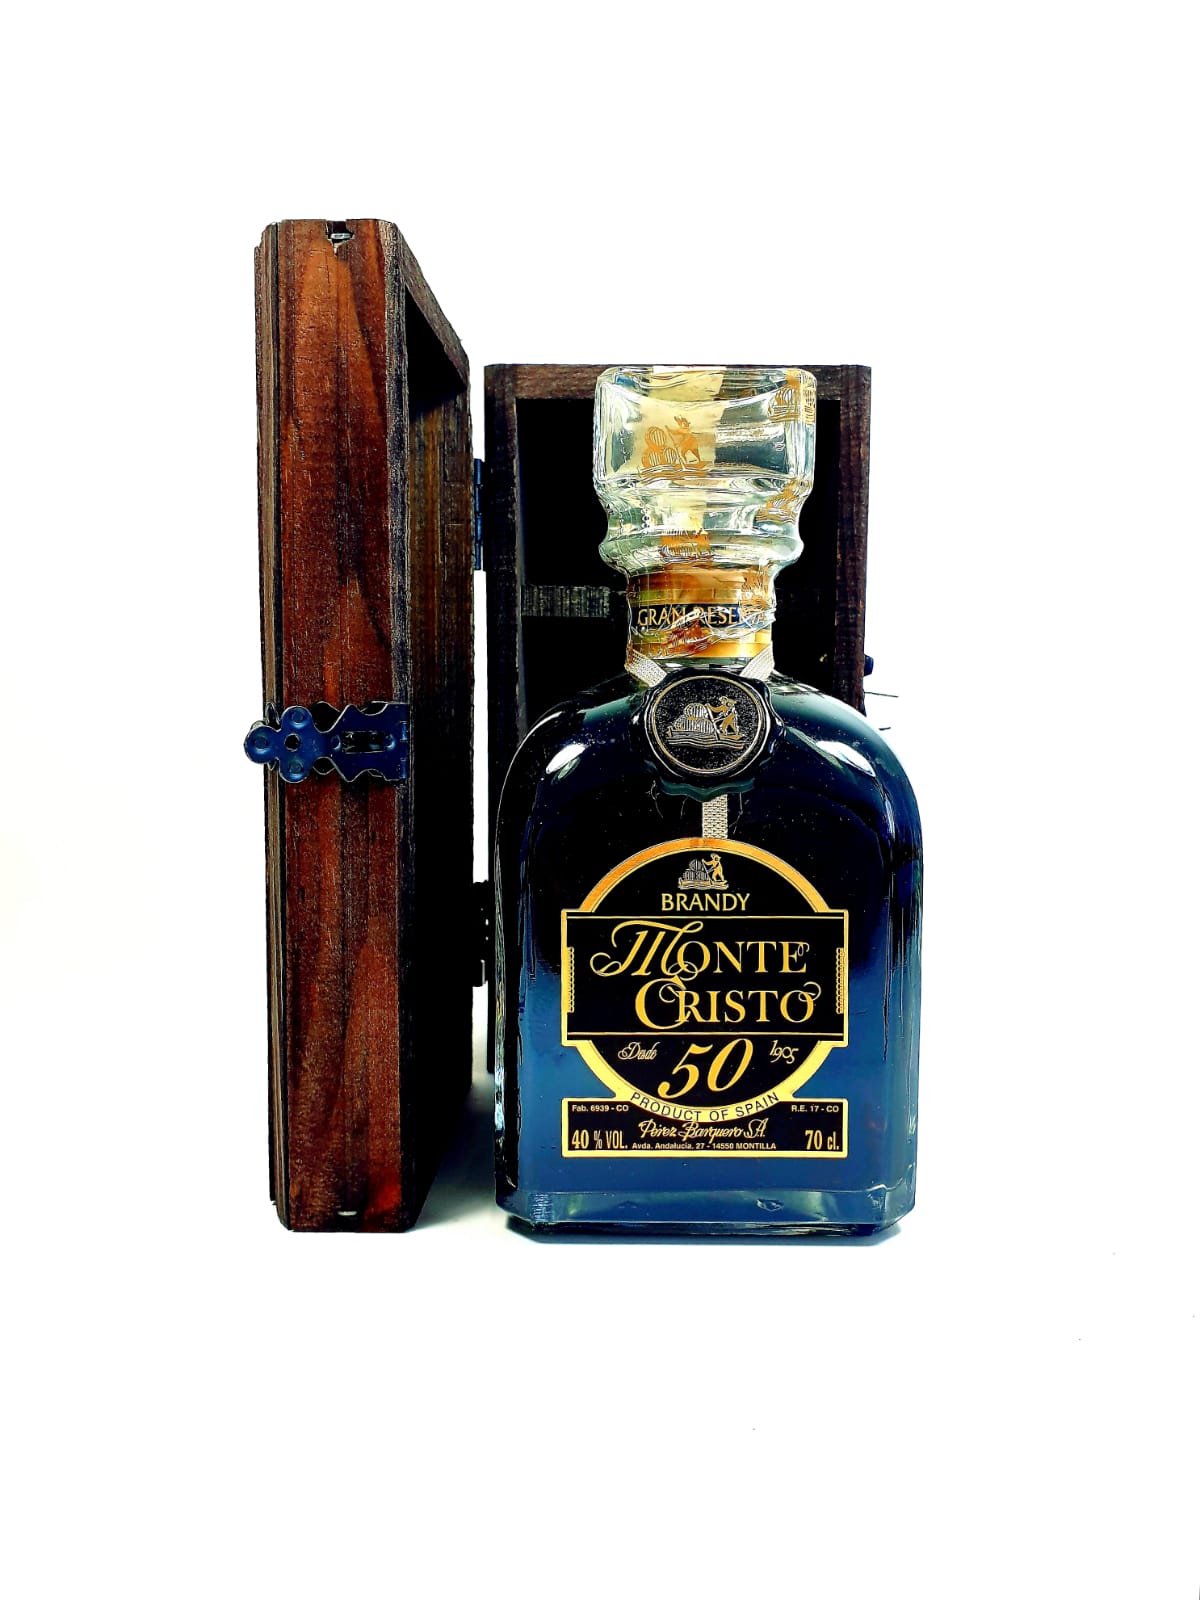 Brandy Monte Cristo "Gran Reserva 50 Years Old" 0,7l